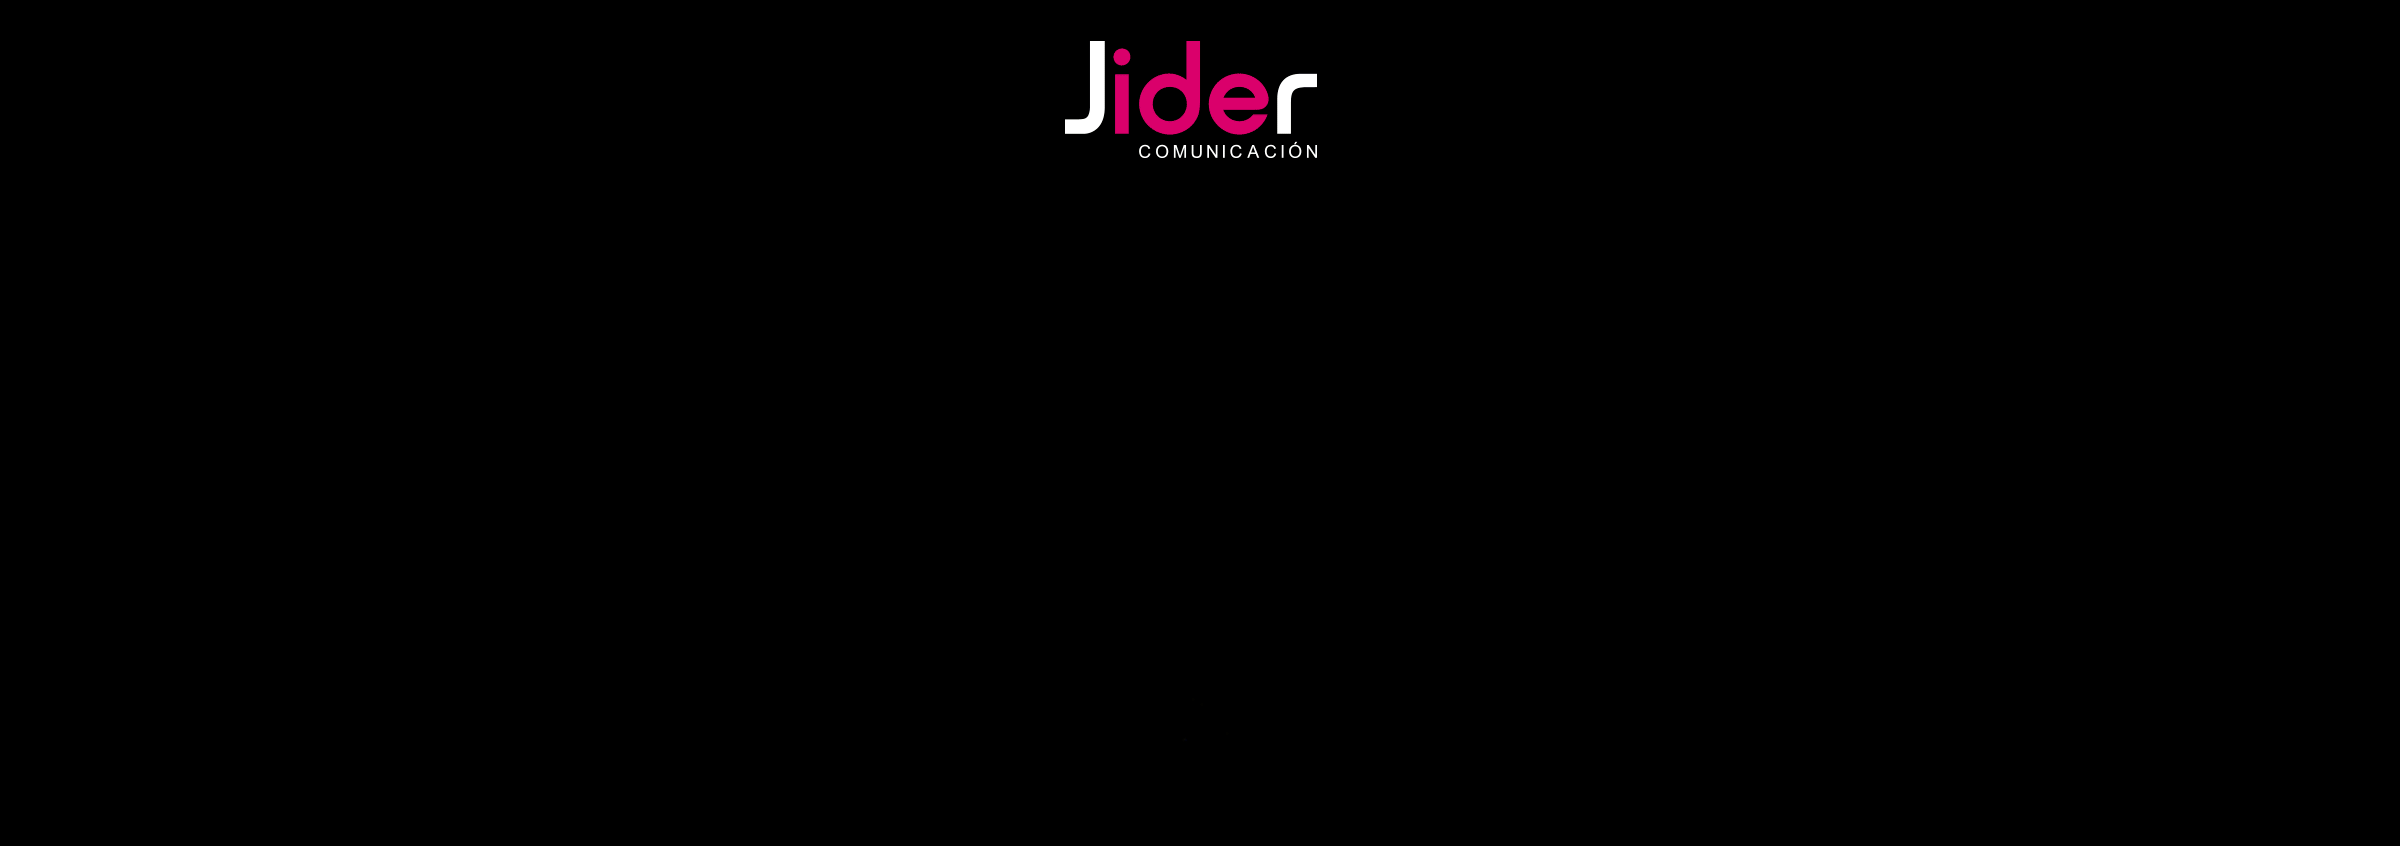 jider-comunicacion-magia